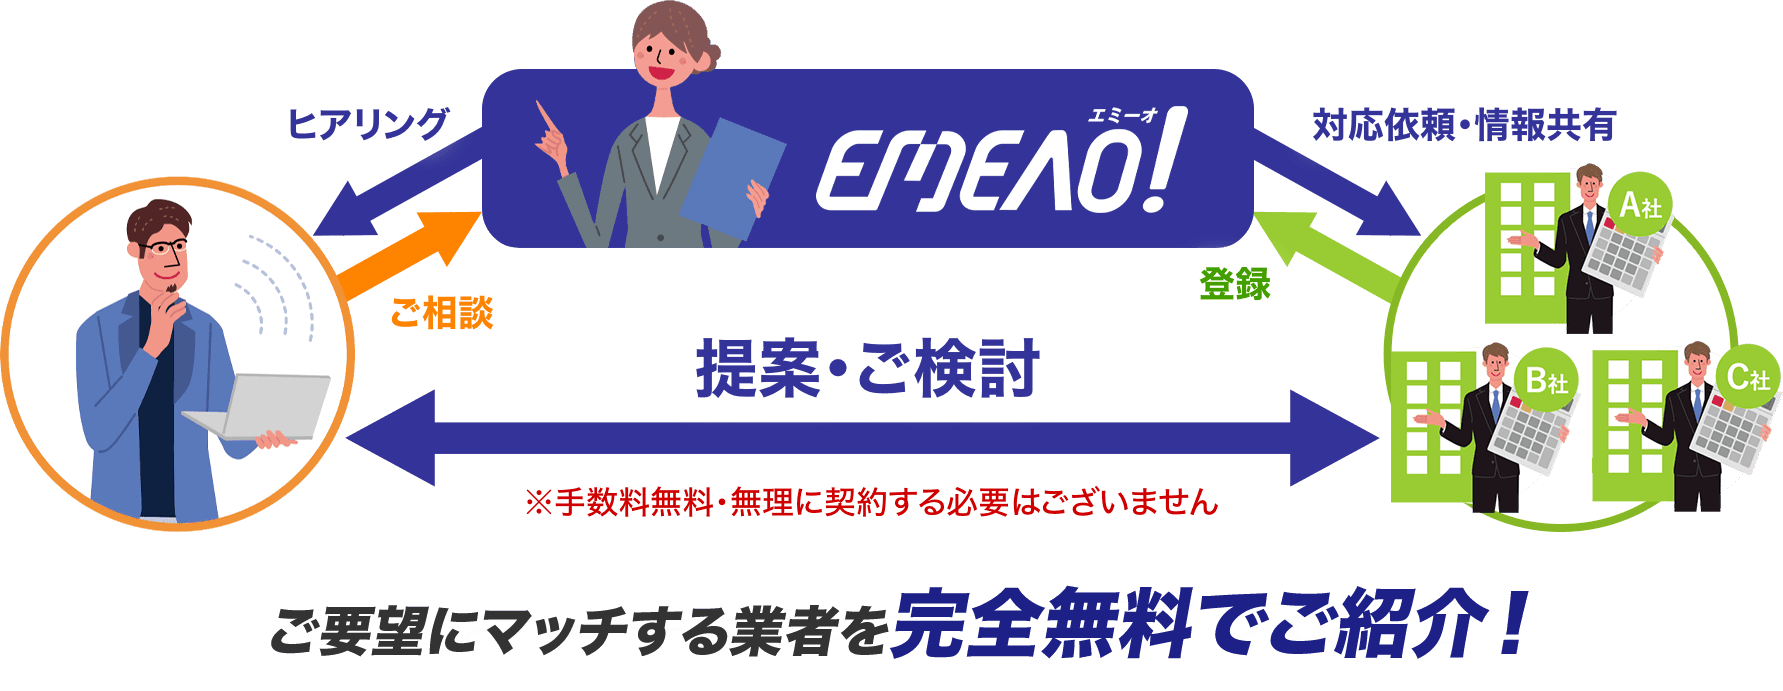 【イメージ】EMEAO!の仕組み